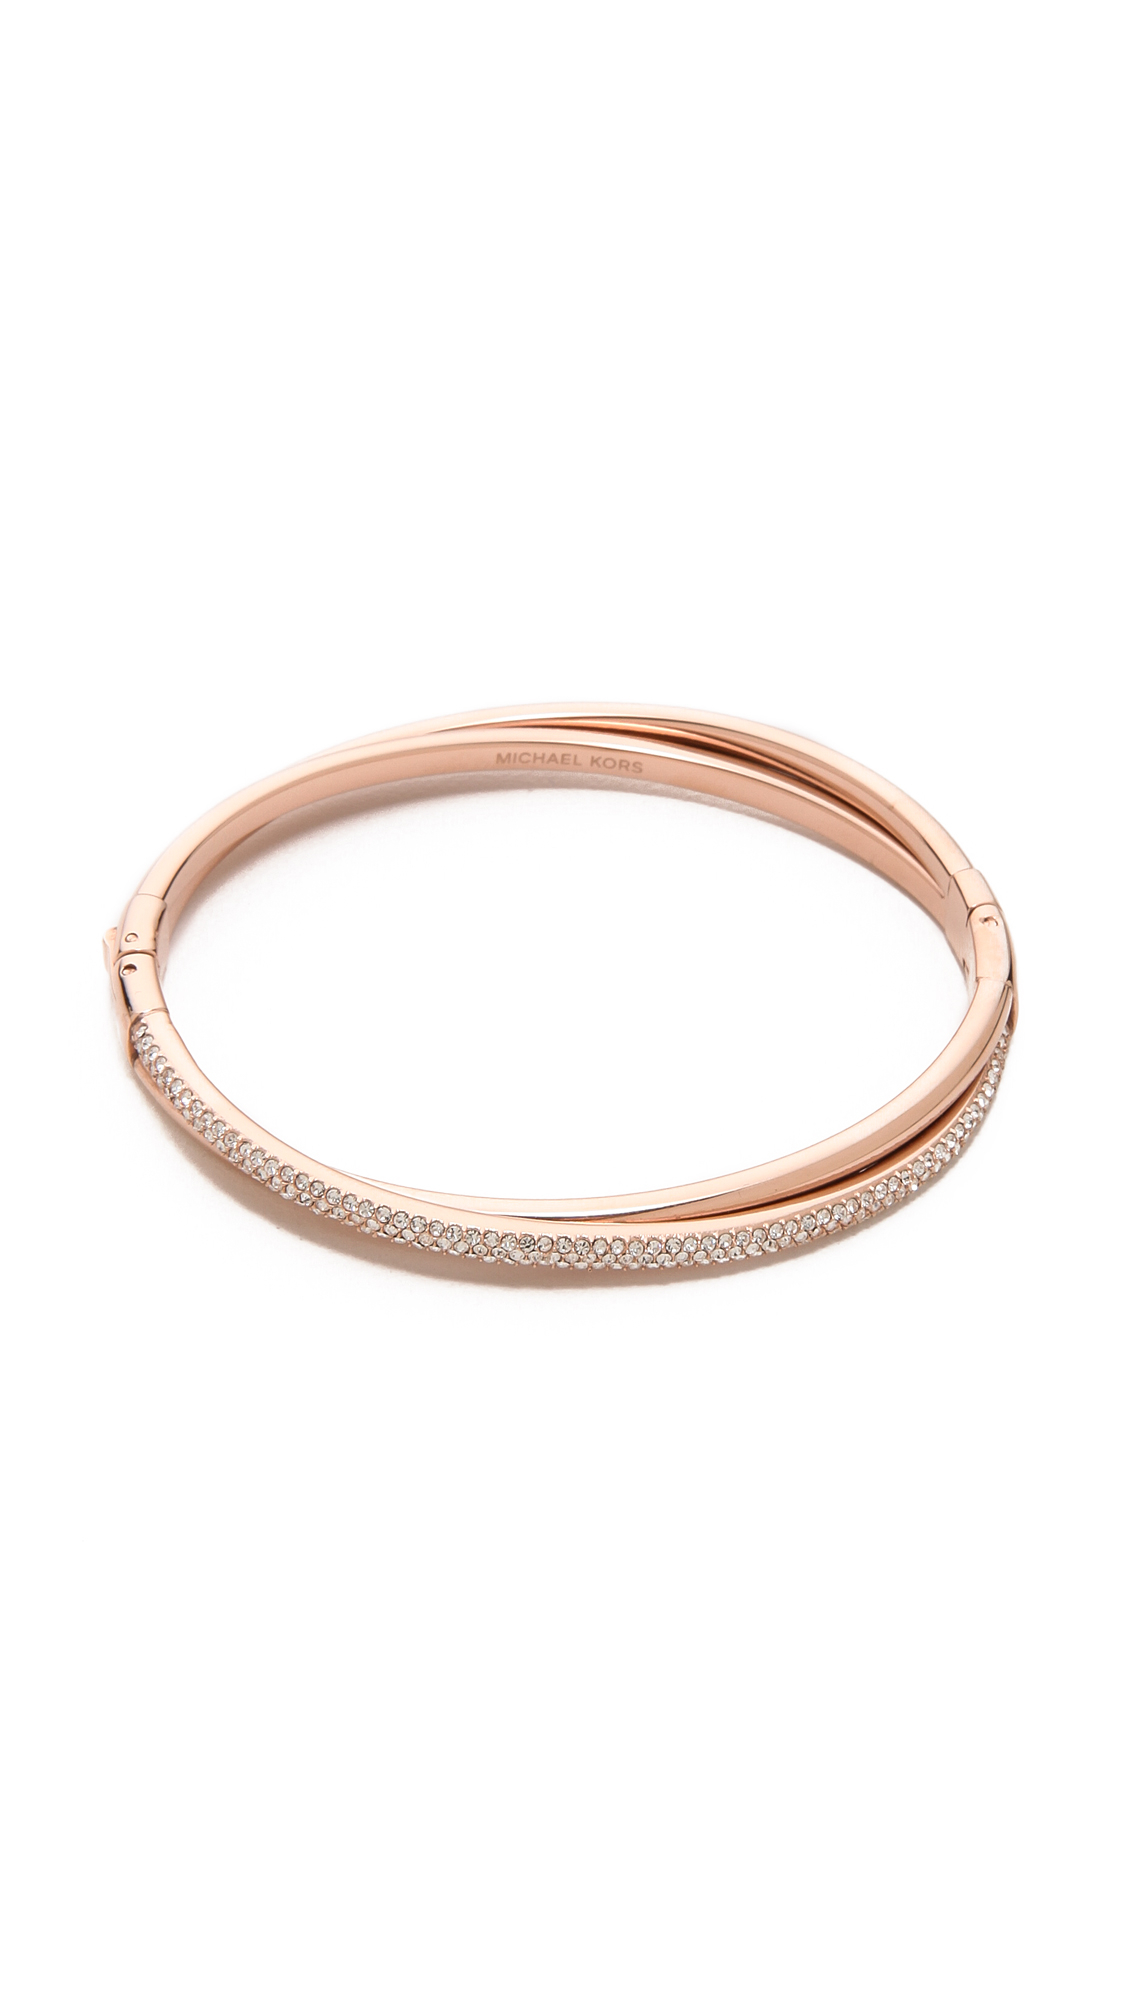 Michael Kors Pave Crisscross Hinge Bracelet in Rose Gold (Metallic 